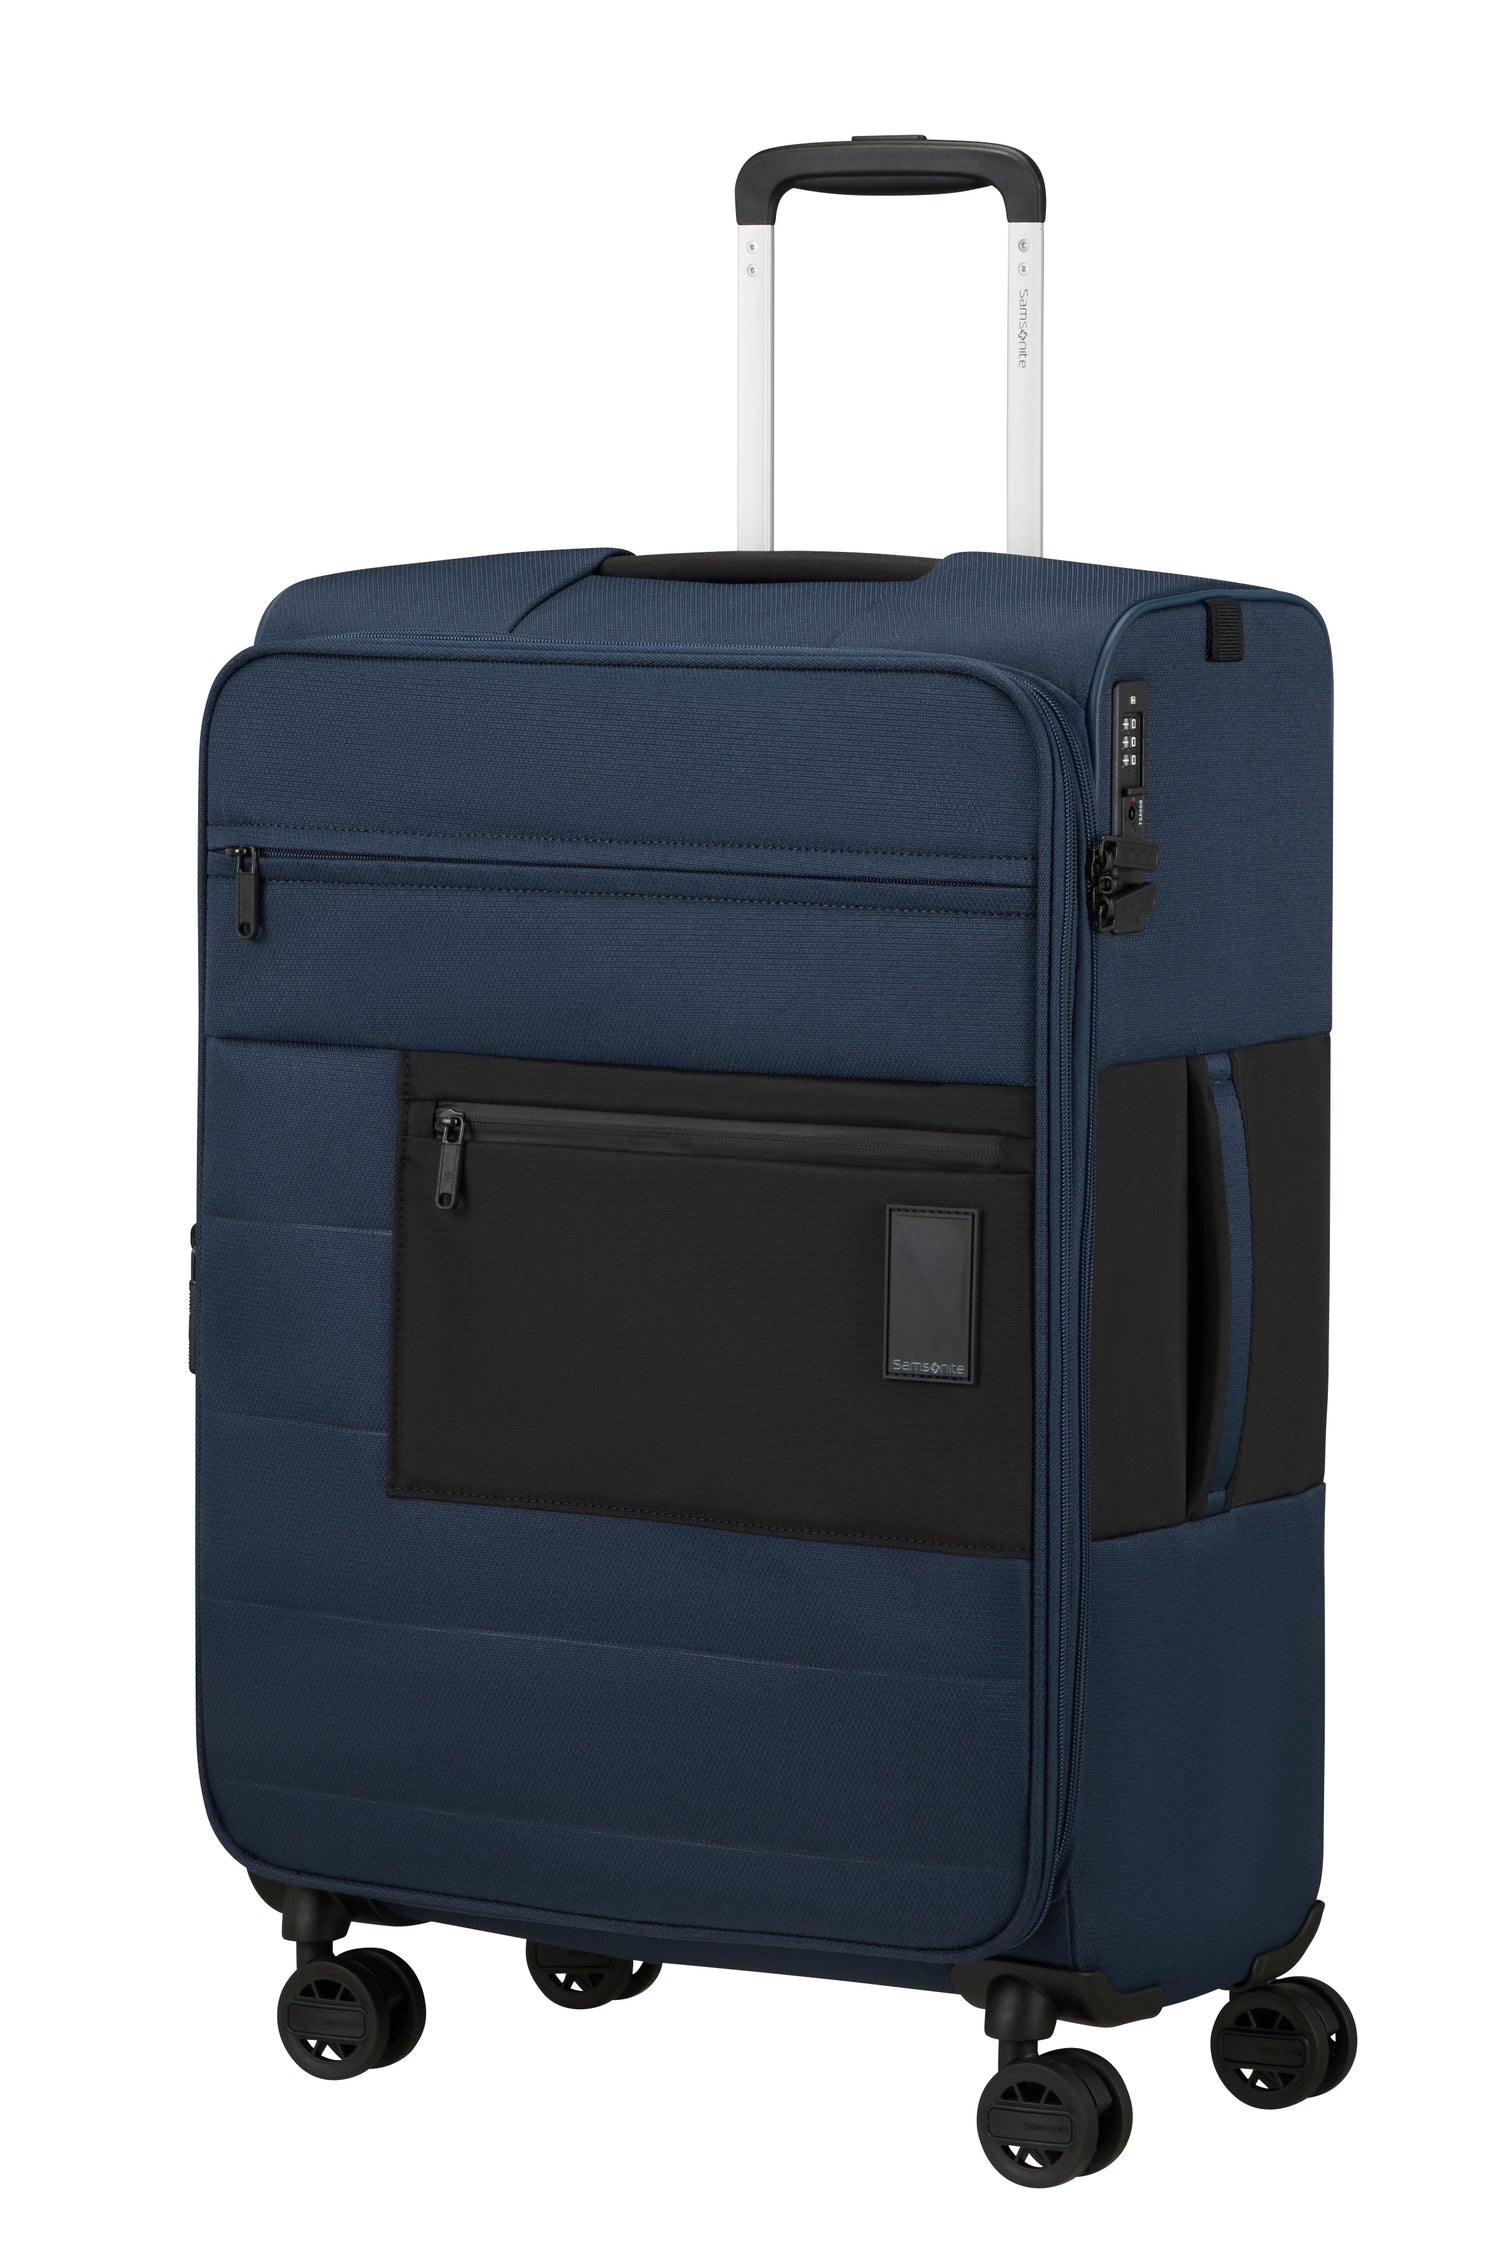 Samsonite Vaycay 4-Wheel 68cm Medium Expandable Recycled Suitcase